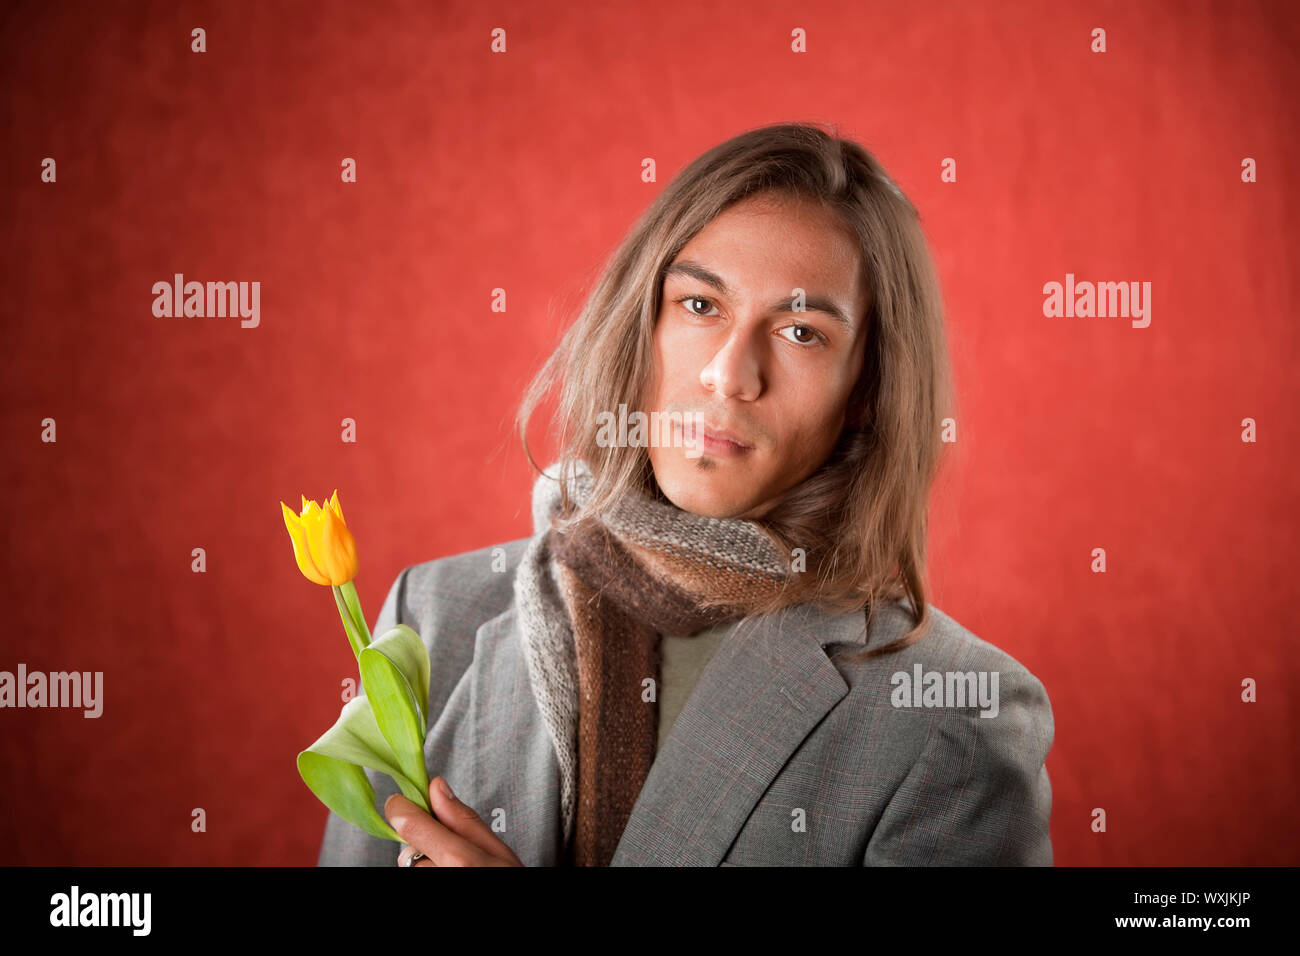 Tulipano messicano immagini e fotografie stock ad alta risoluzione - Alamy